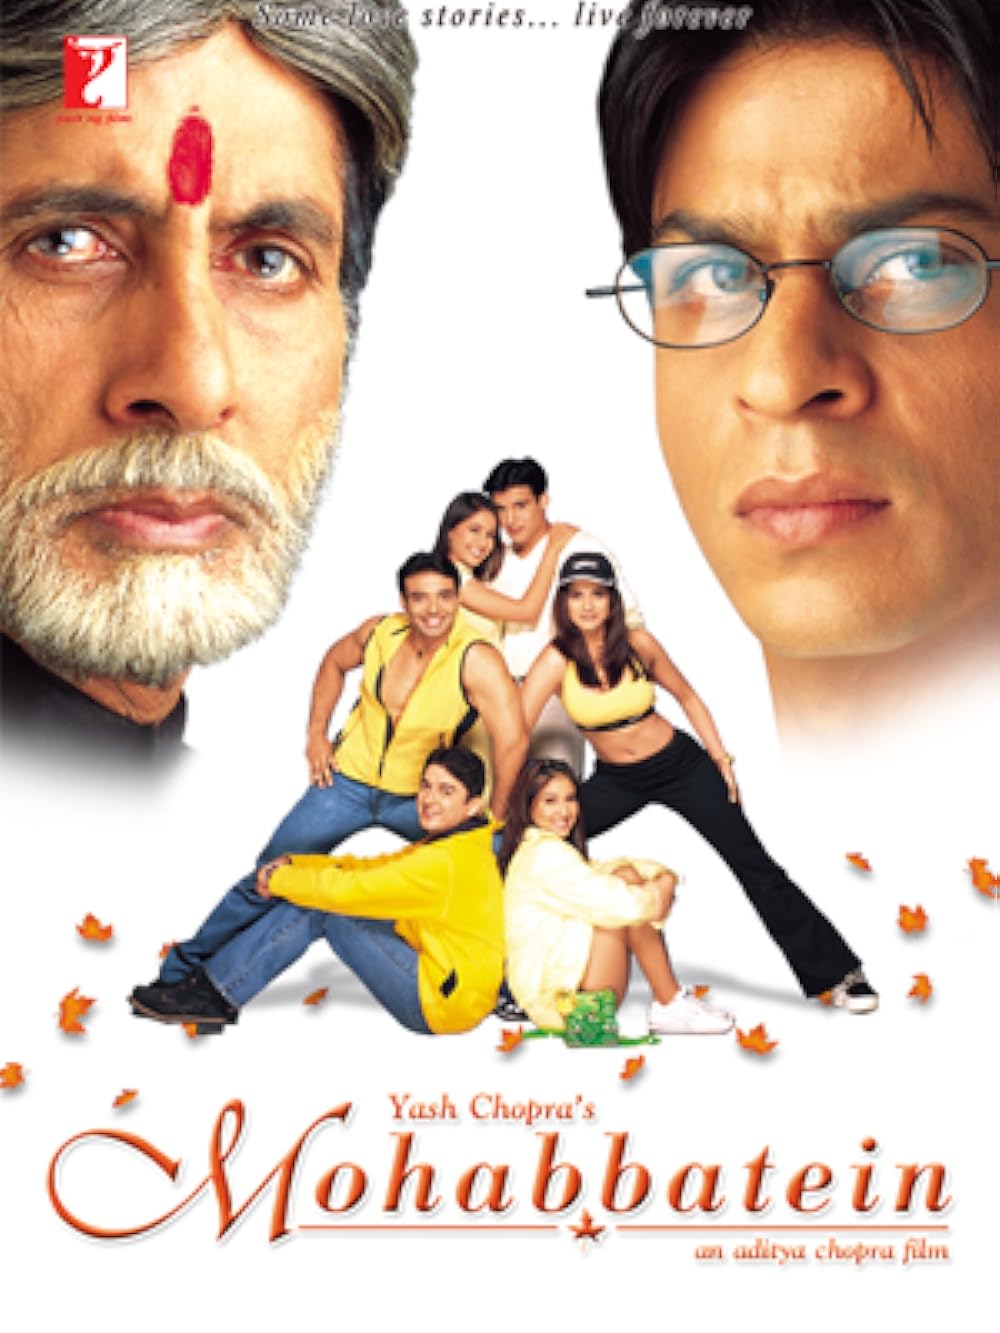 Download Mohabbatein (2010) Hindi Movie Bluray || 720p [1.6GB] || 1080p [5.5GB]